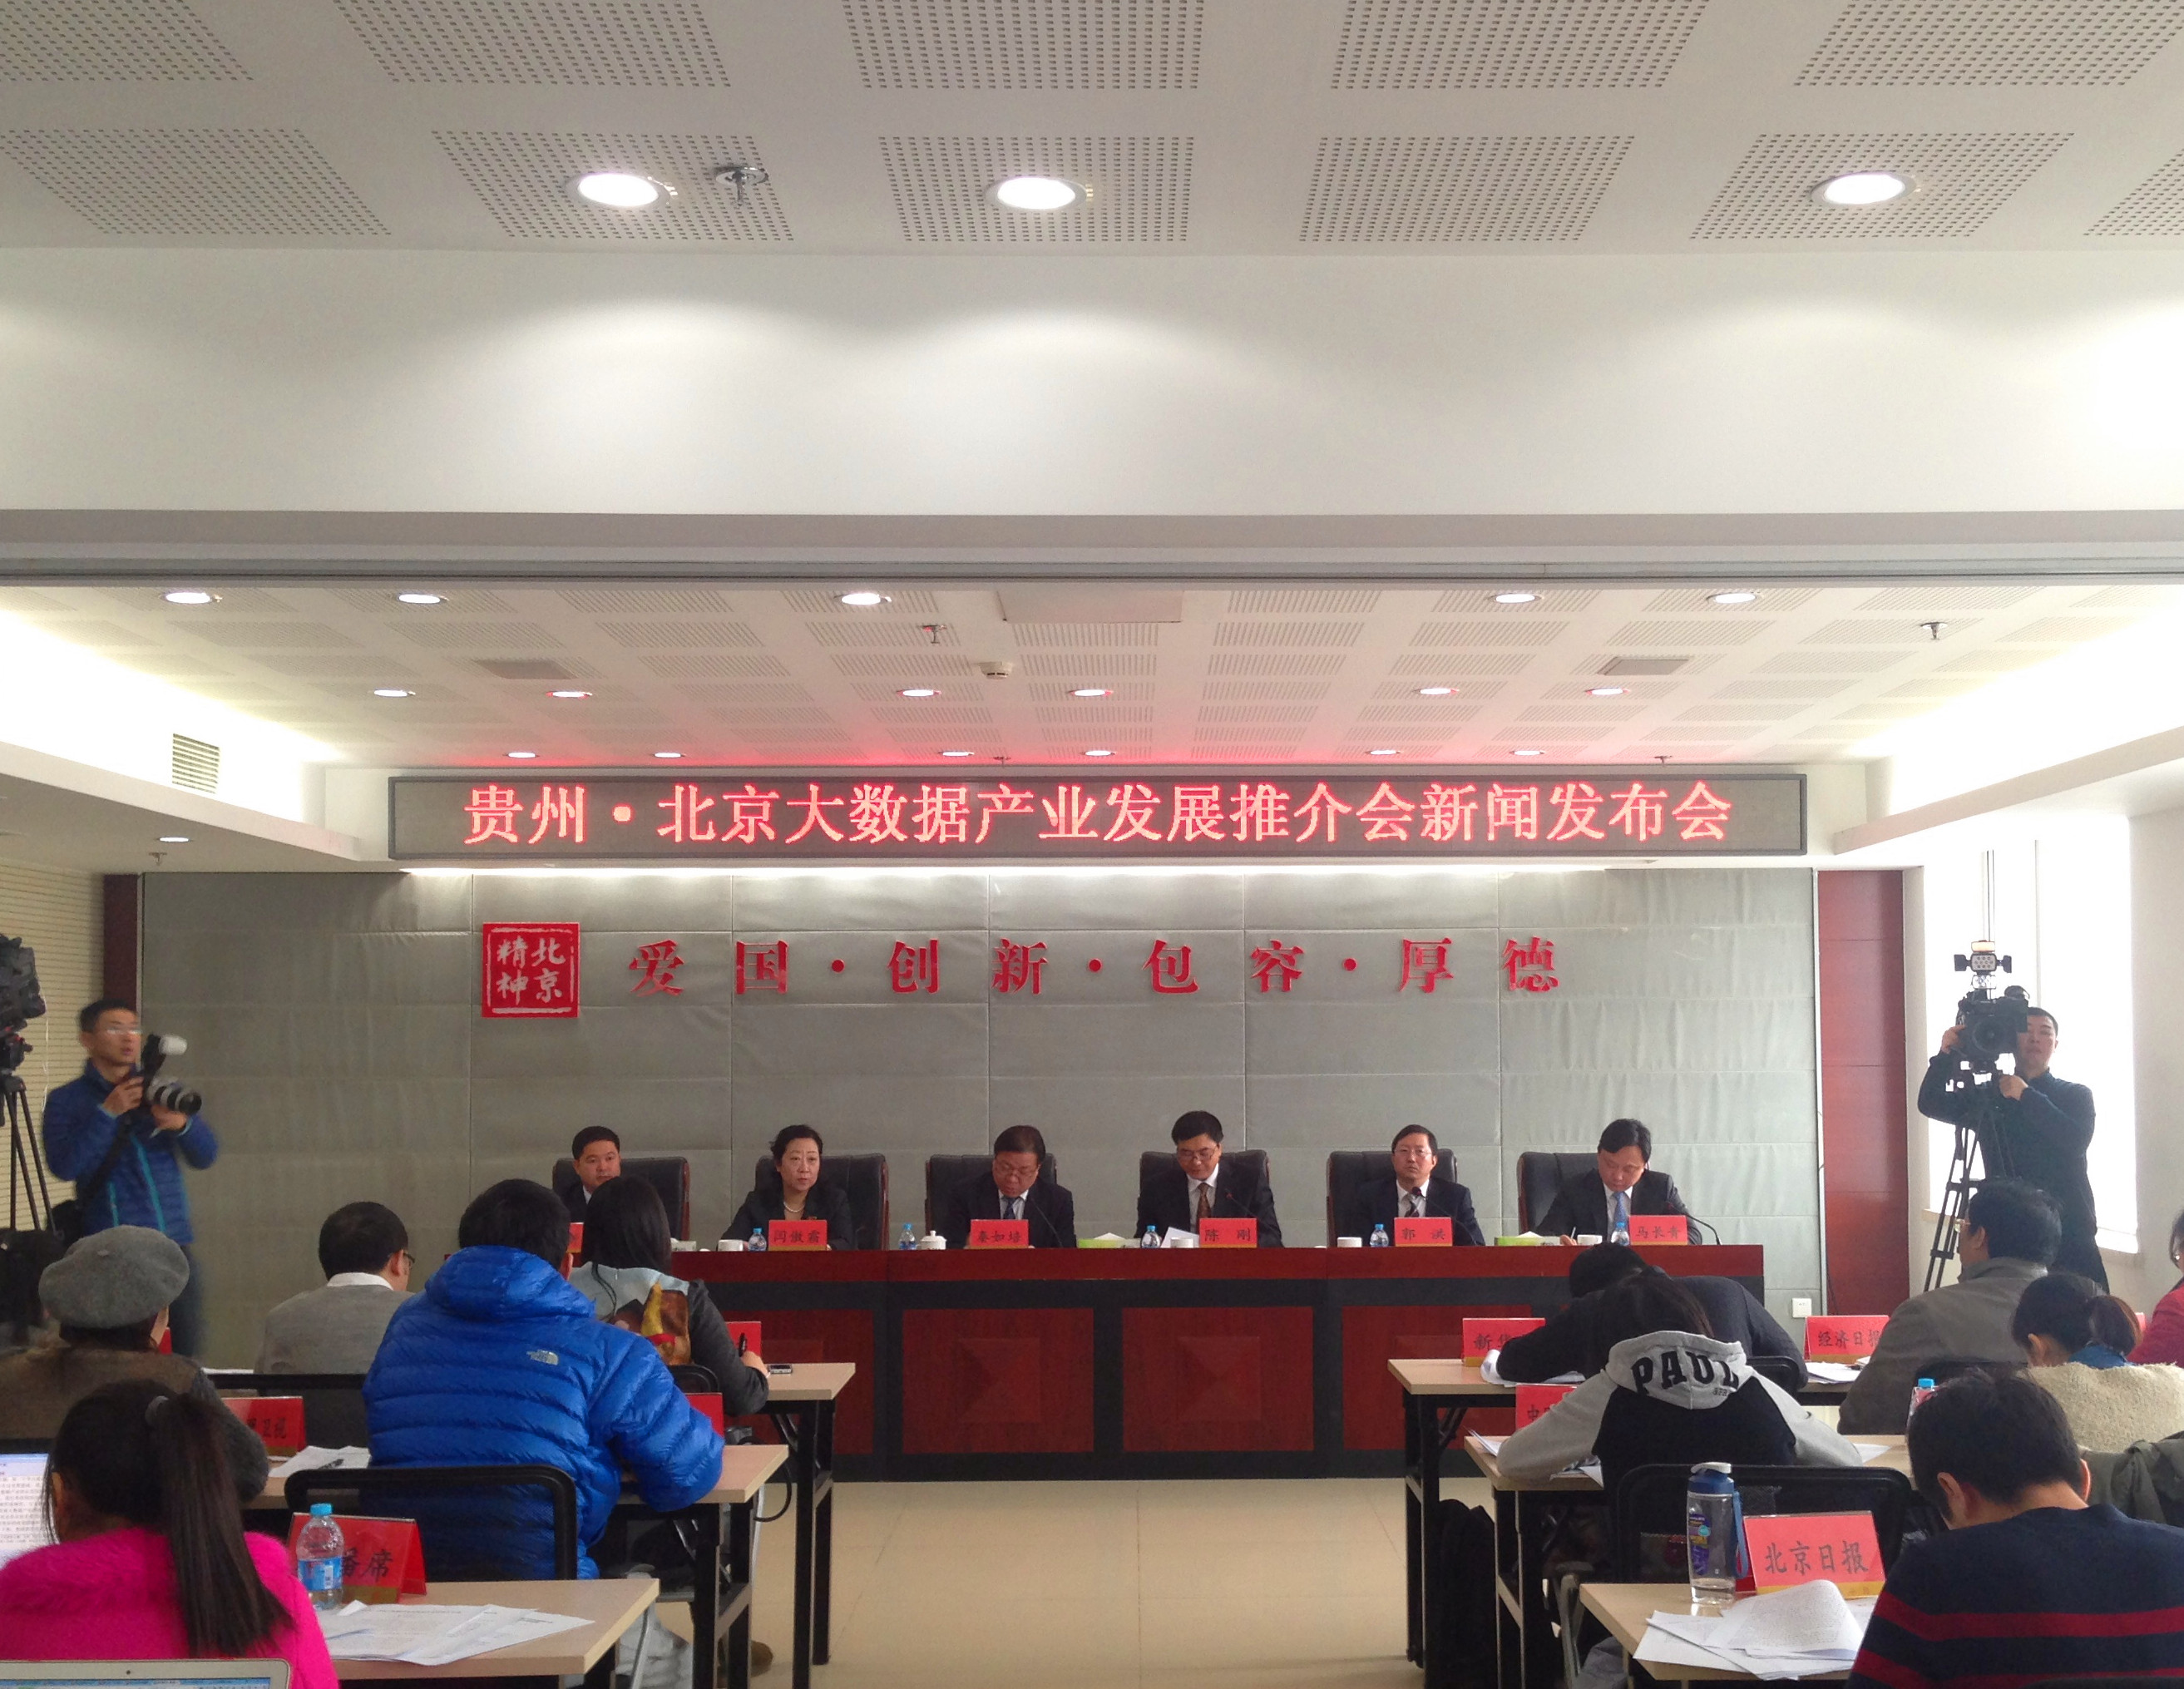 Qin Rupei:'Big data brings wealth to Guizhou'